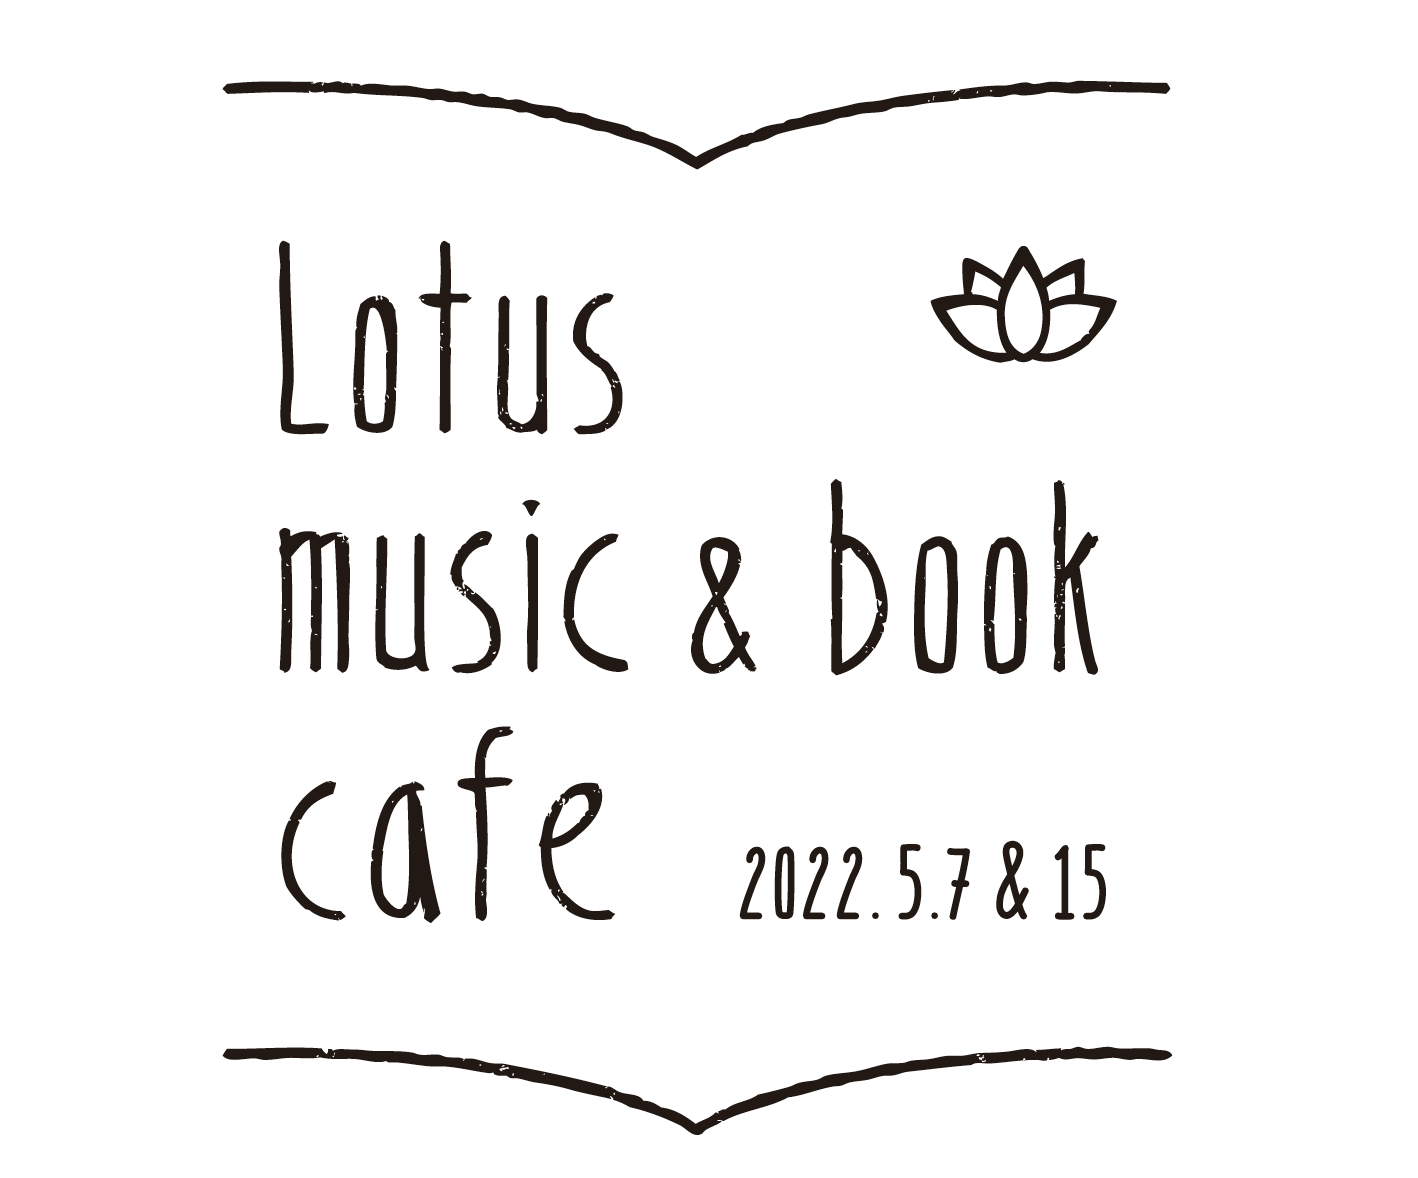 Lotus music & book cafe 2022